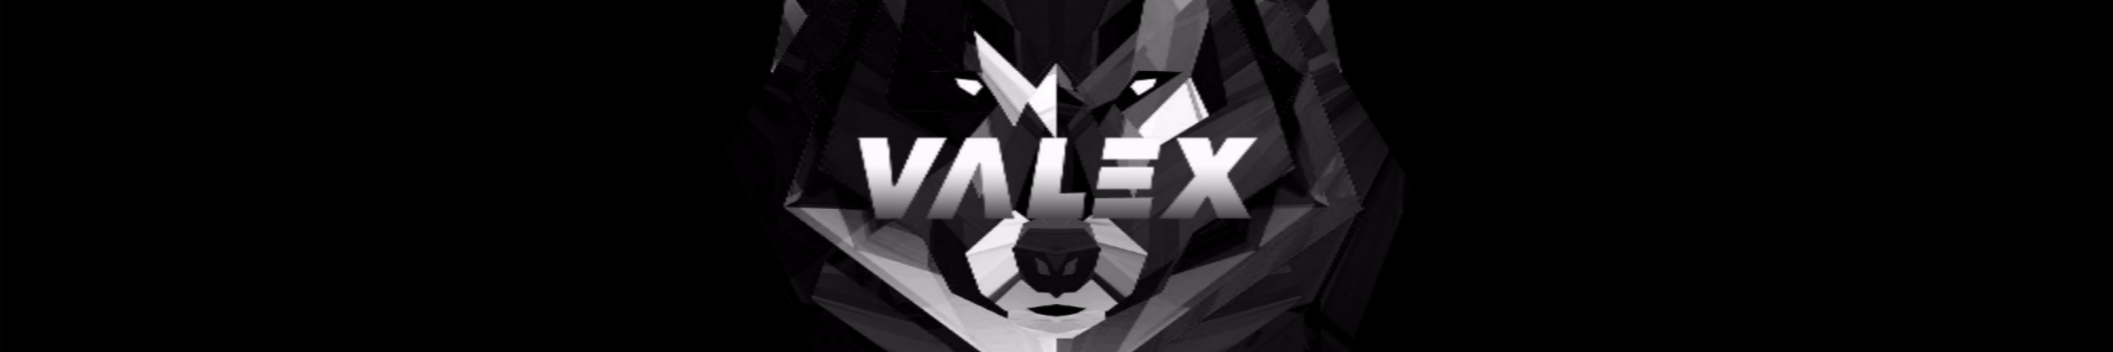 ValeX Official